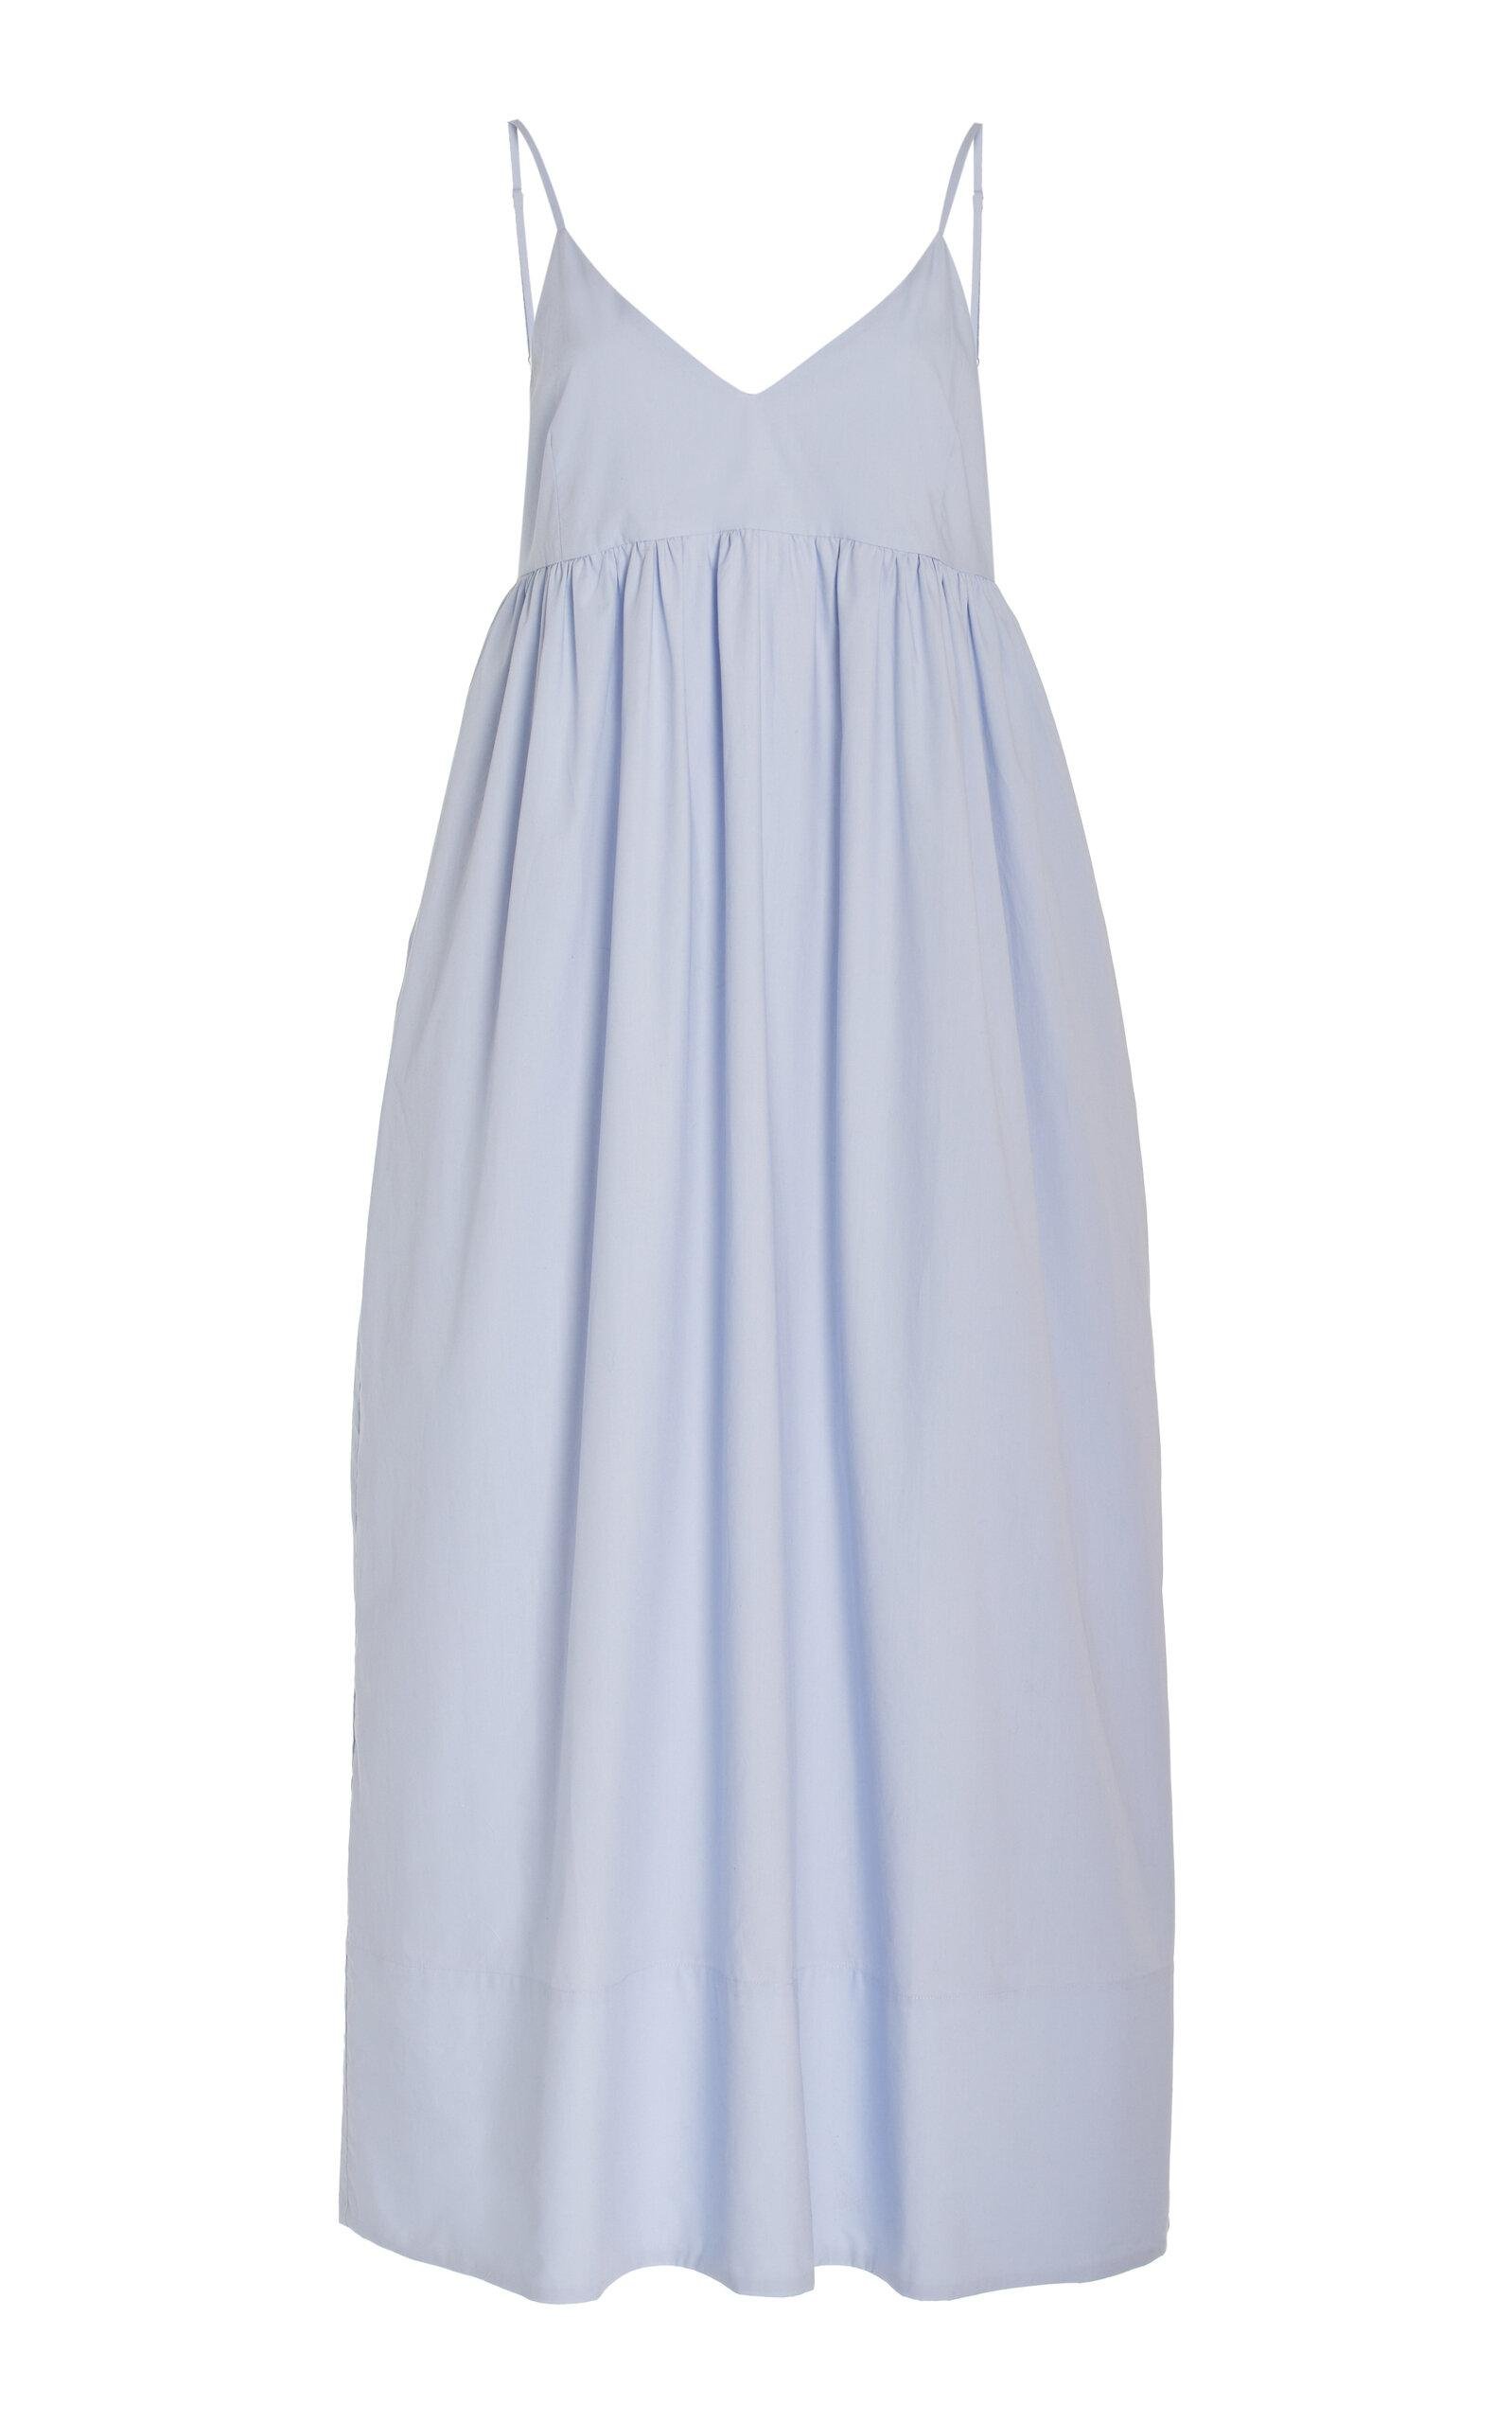 Jenni Kayne - Cove Cotton Maxi Dress - Blue - M - Moda Operandi by JENNI KAYNE